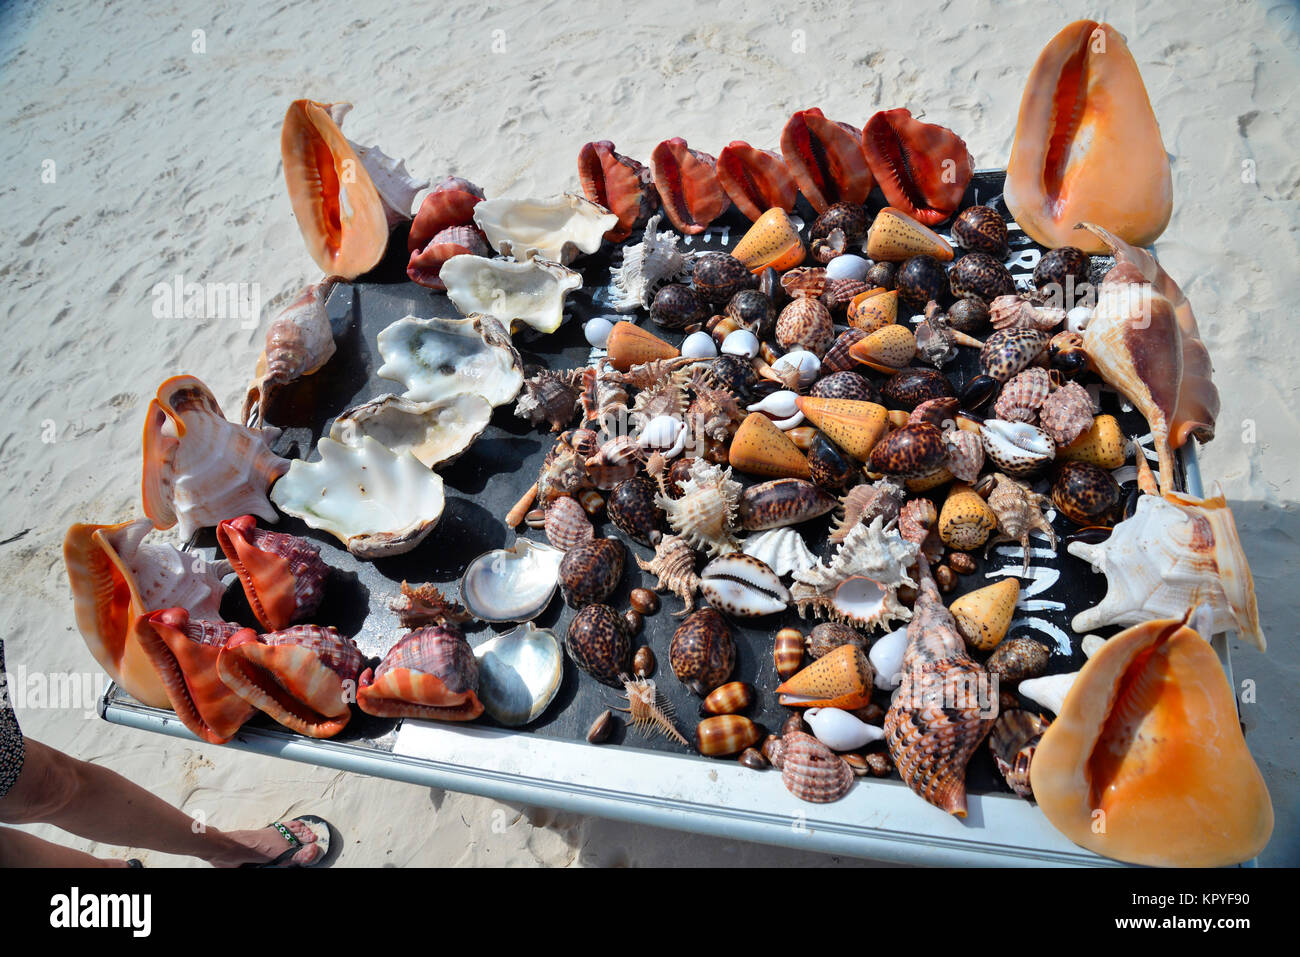 Sansibar ist eine Indische Ozean Paradies, das die meisten Menschen es sich leisten können, für faule Ferien auf warmen Strände zu besuchen. Sammlung von illegal geschlagenem Shells. Stockfoto